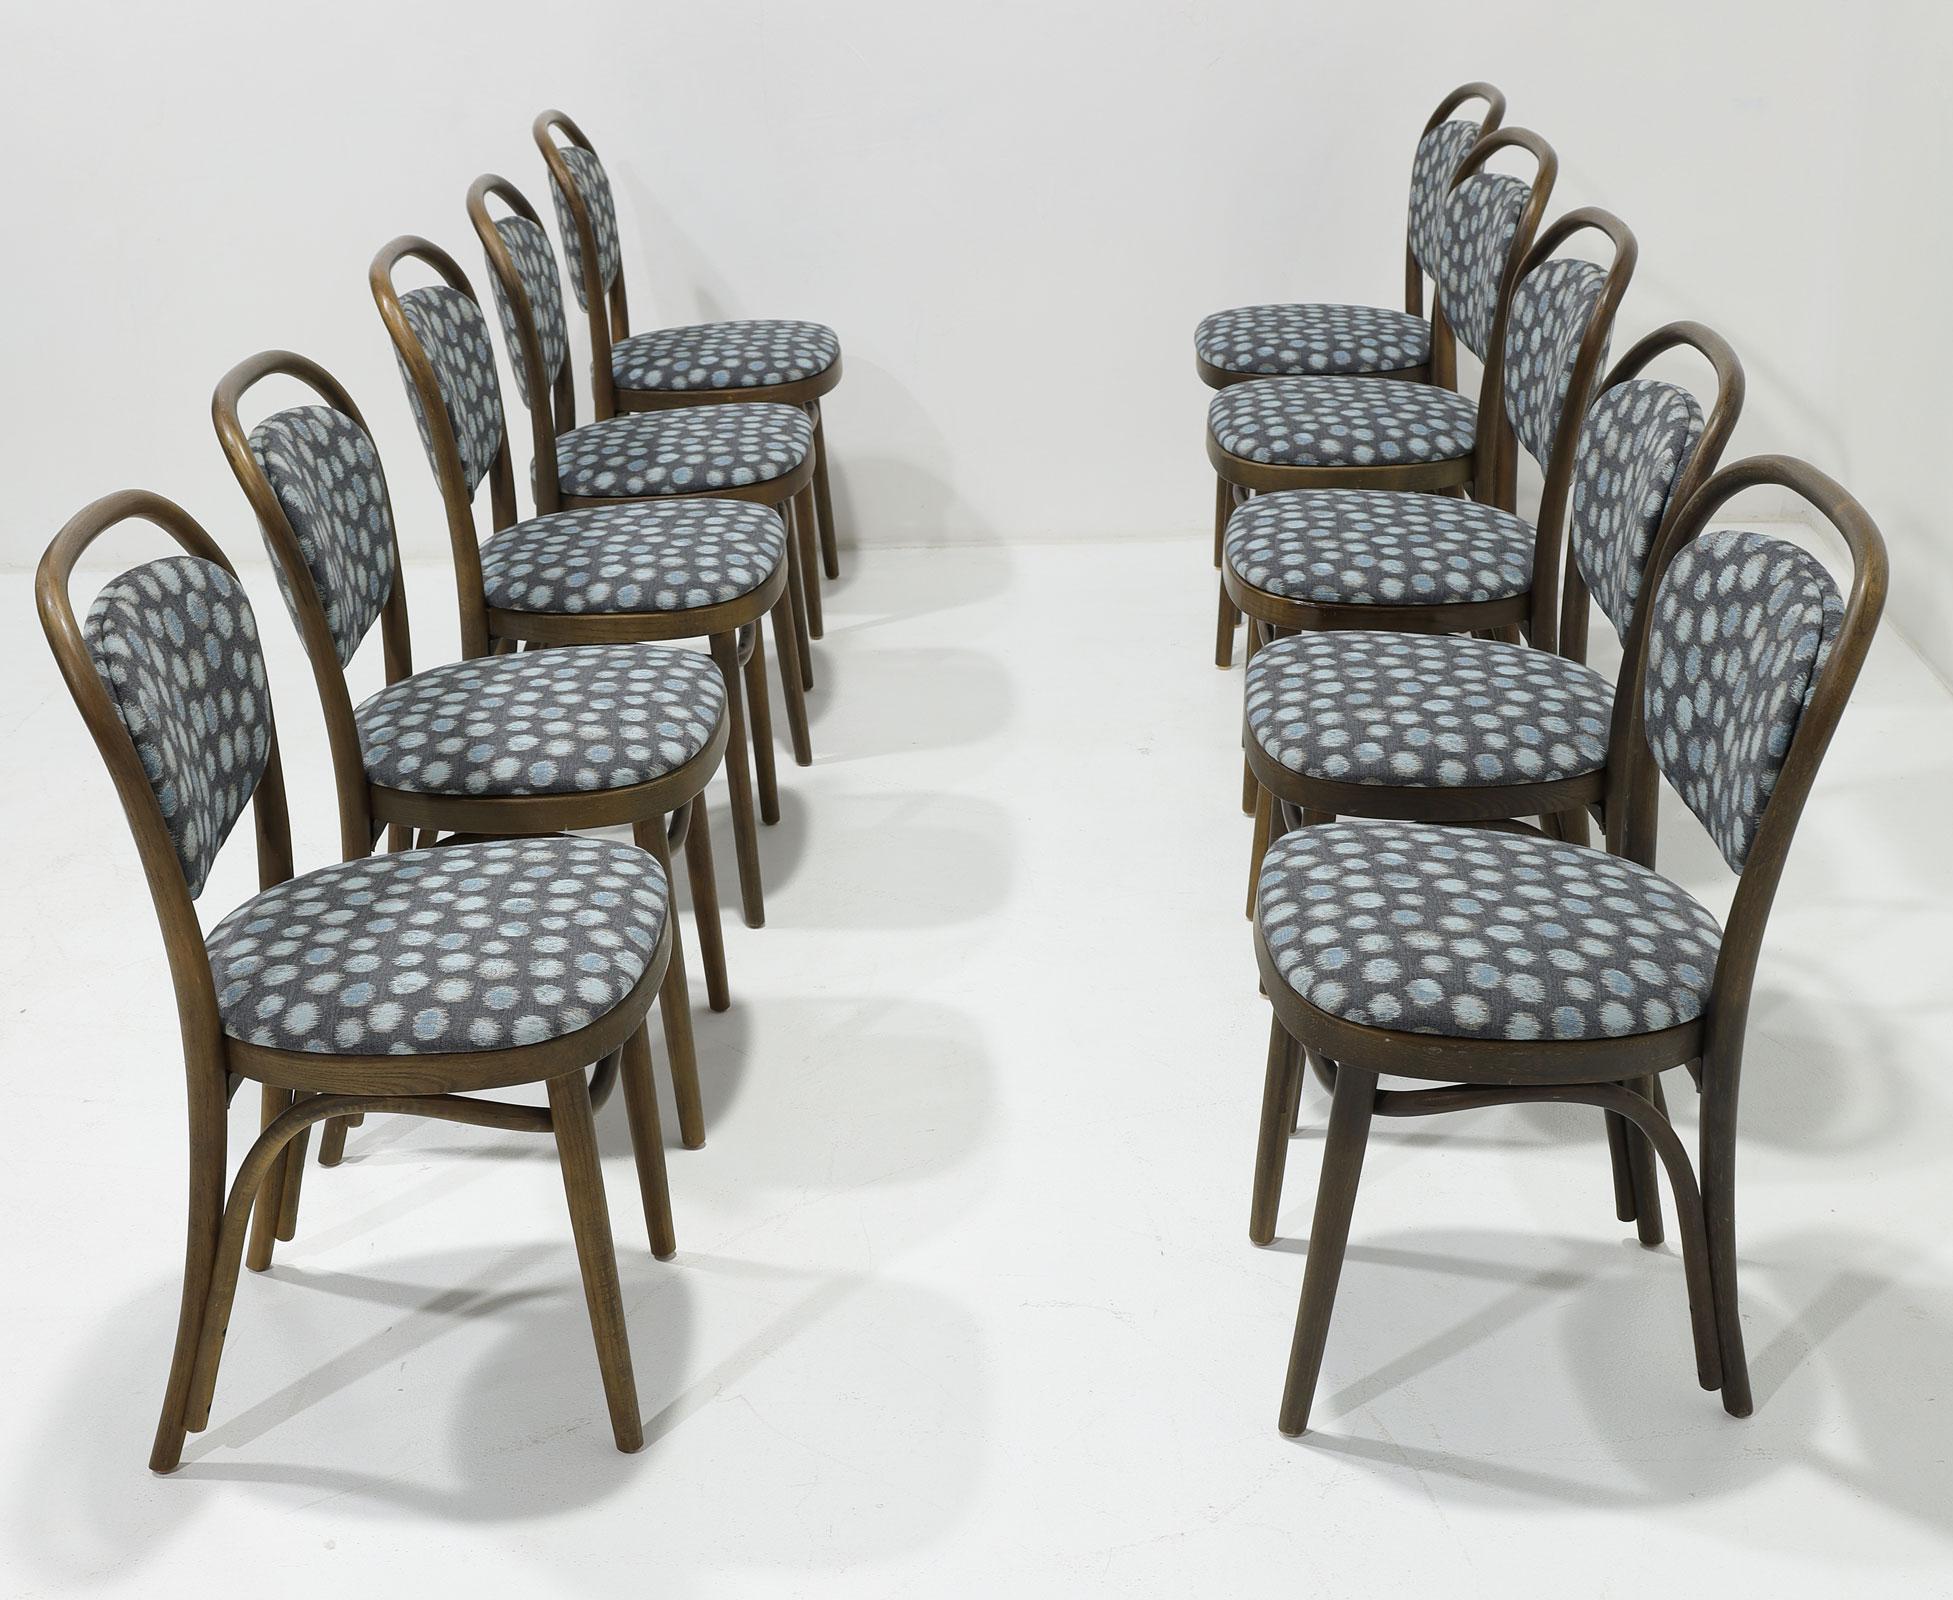 Ein schöner Satz von 10 Thonet Bugholz-Esszimmerstühlen. Die Stühle haben eine gepolsterte Sitzfläche und Rückenlehne. Toller Text! Wir haben sie mit einem Perennials Performance-Stoff in Blau-, Grau- und Brauntönen neu gepolstert. 